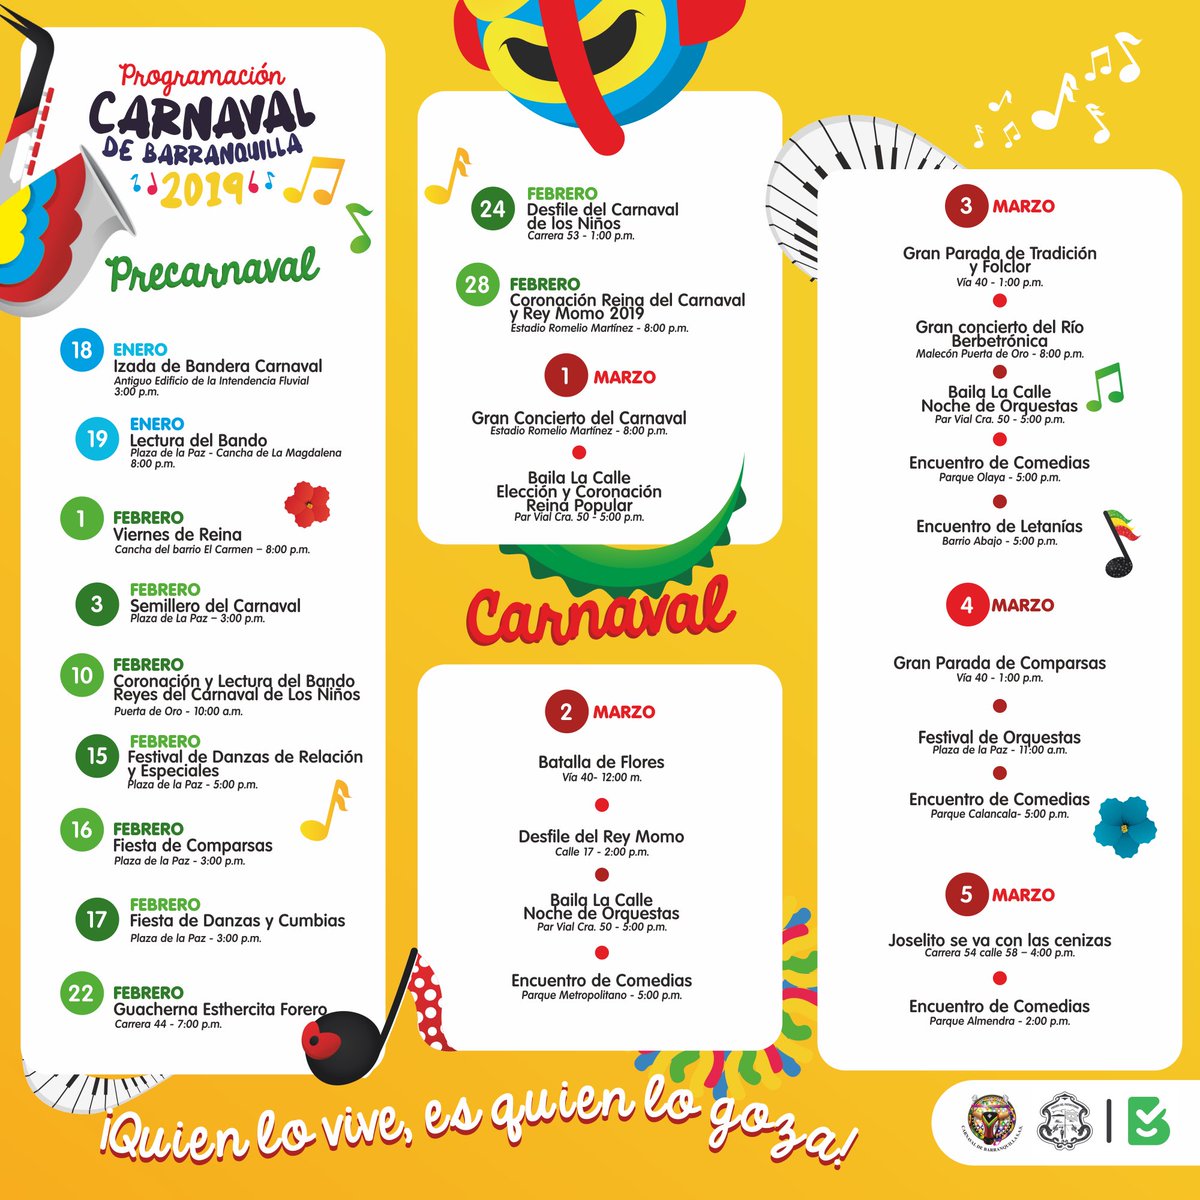 Esta es la programación del Carnaval de Barranquilla.